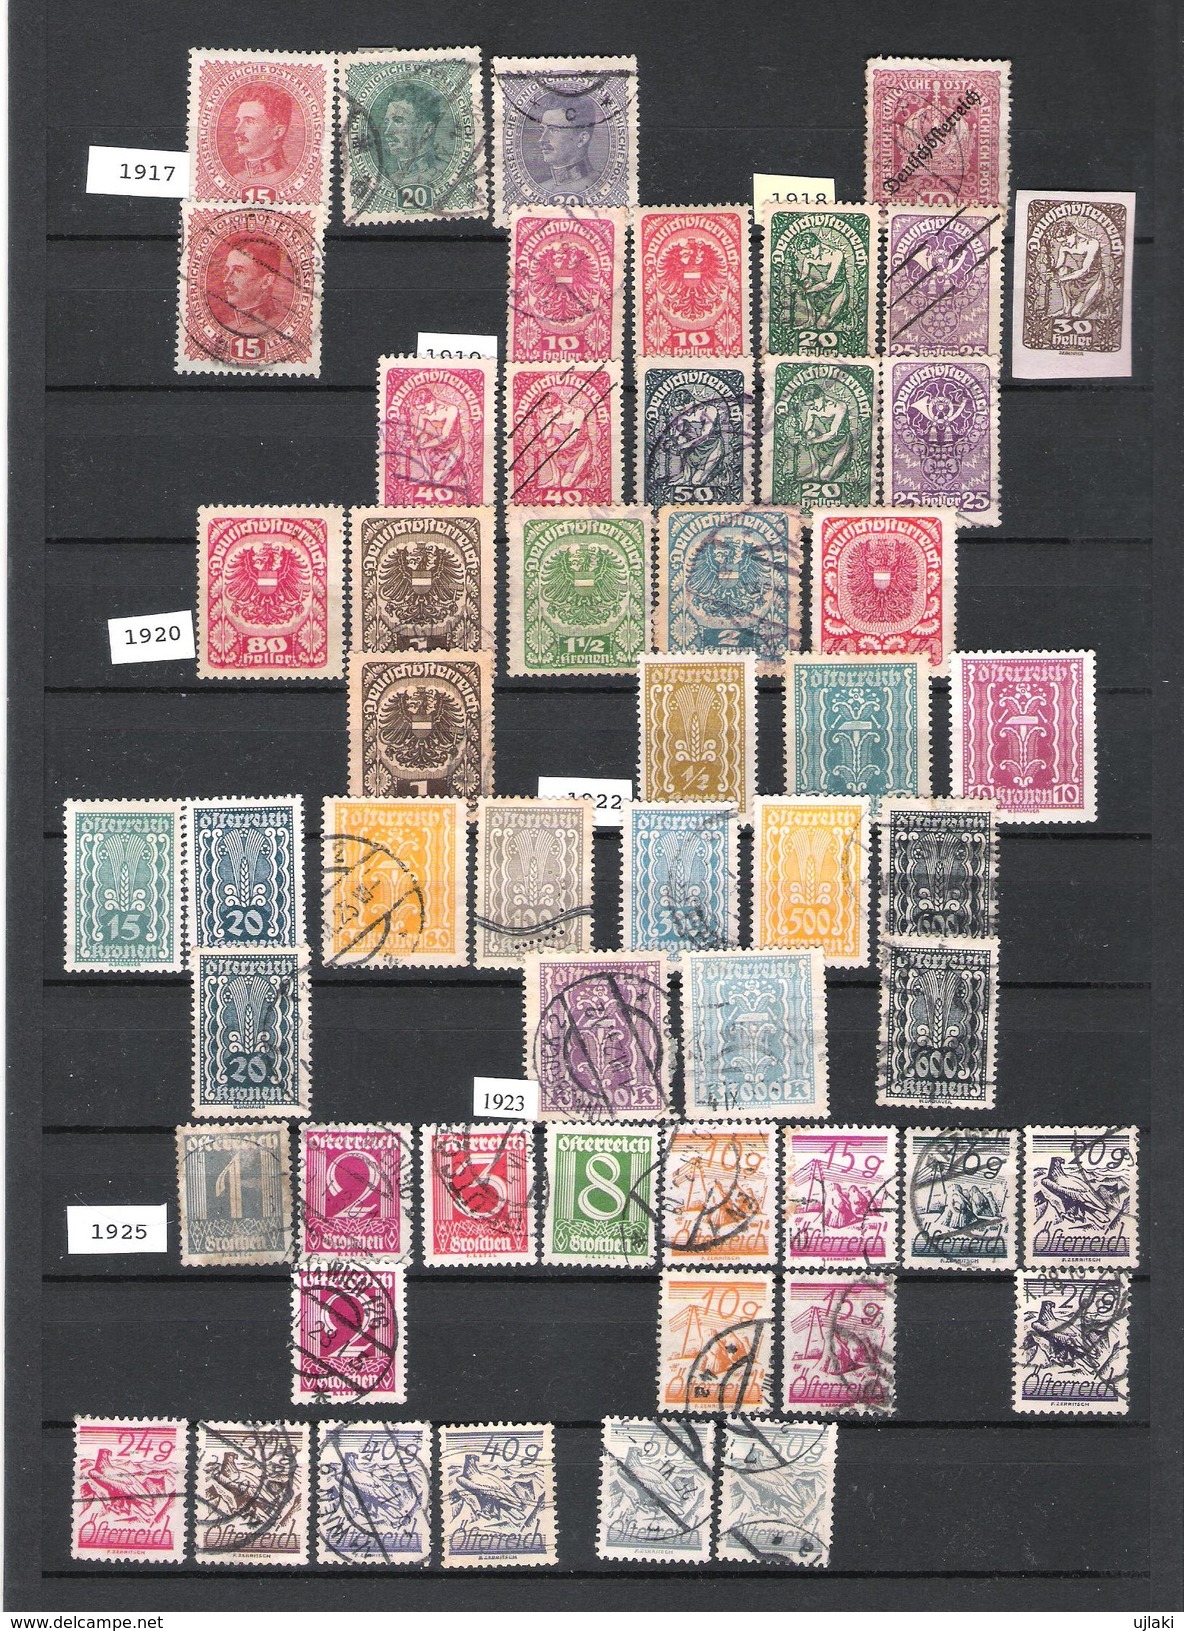 AUTRICHE: Mini Collection De 258 TP Divers,ttes époques: Poste,journeaux,taxes Et Autres (1890....1988) - Colecciones